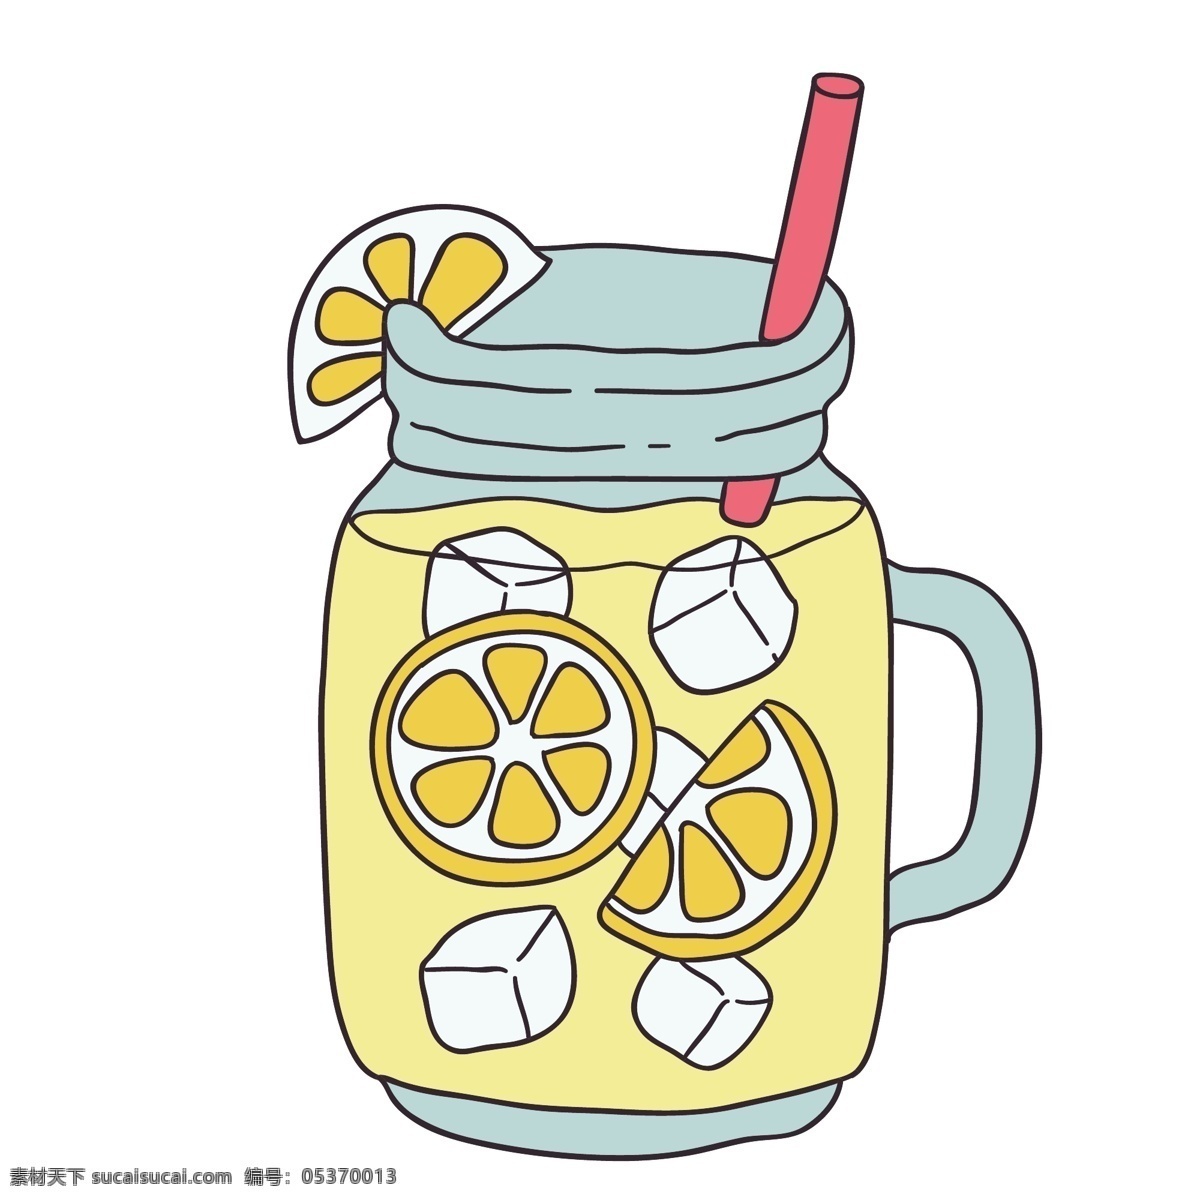 夏日 柠檬 冷饮 插画 水果 黄色 蜂蜜 柠檬水 涂鸦 创意 绘画 图案 动漫动画